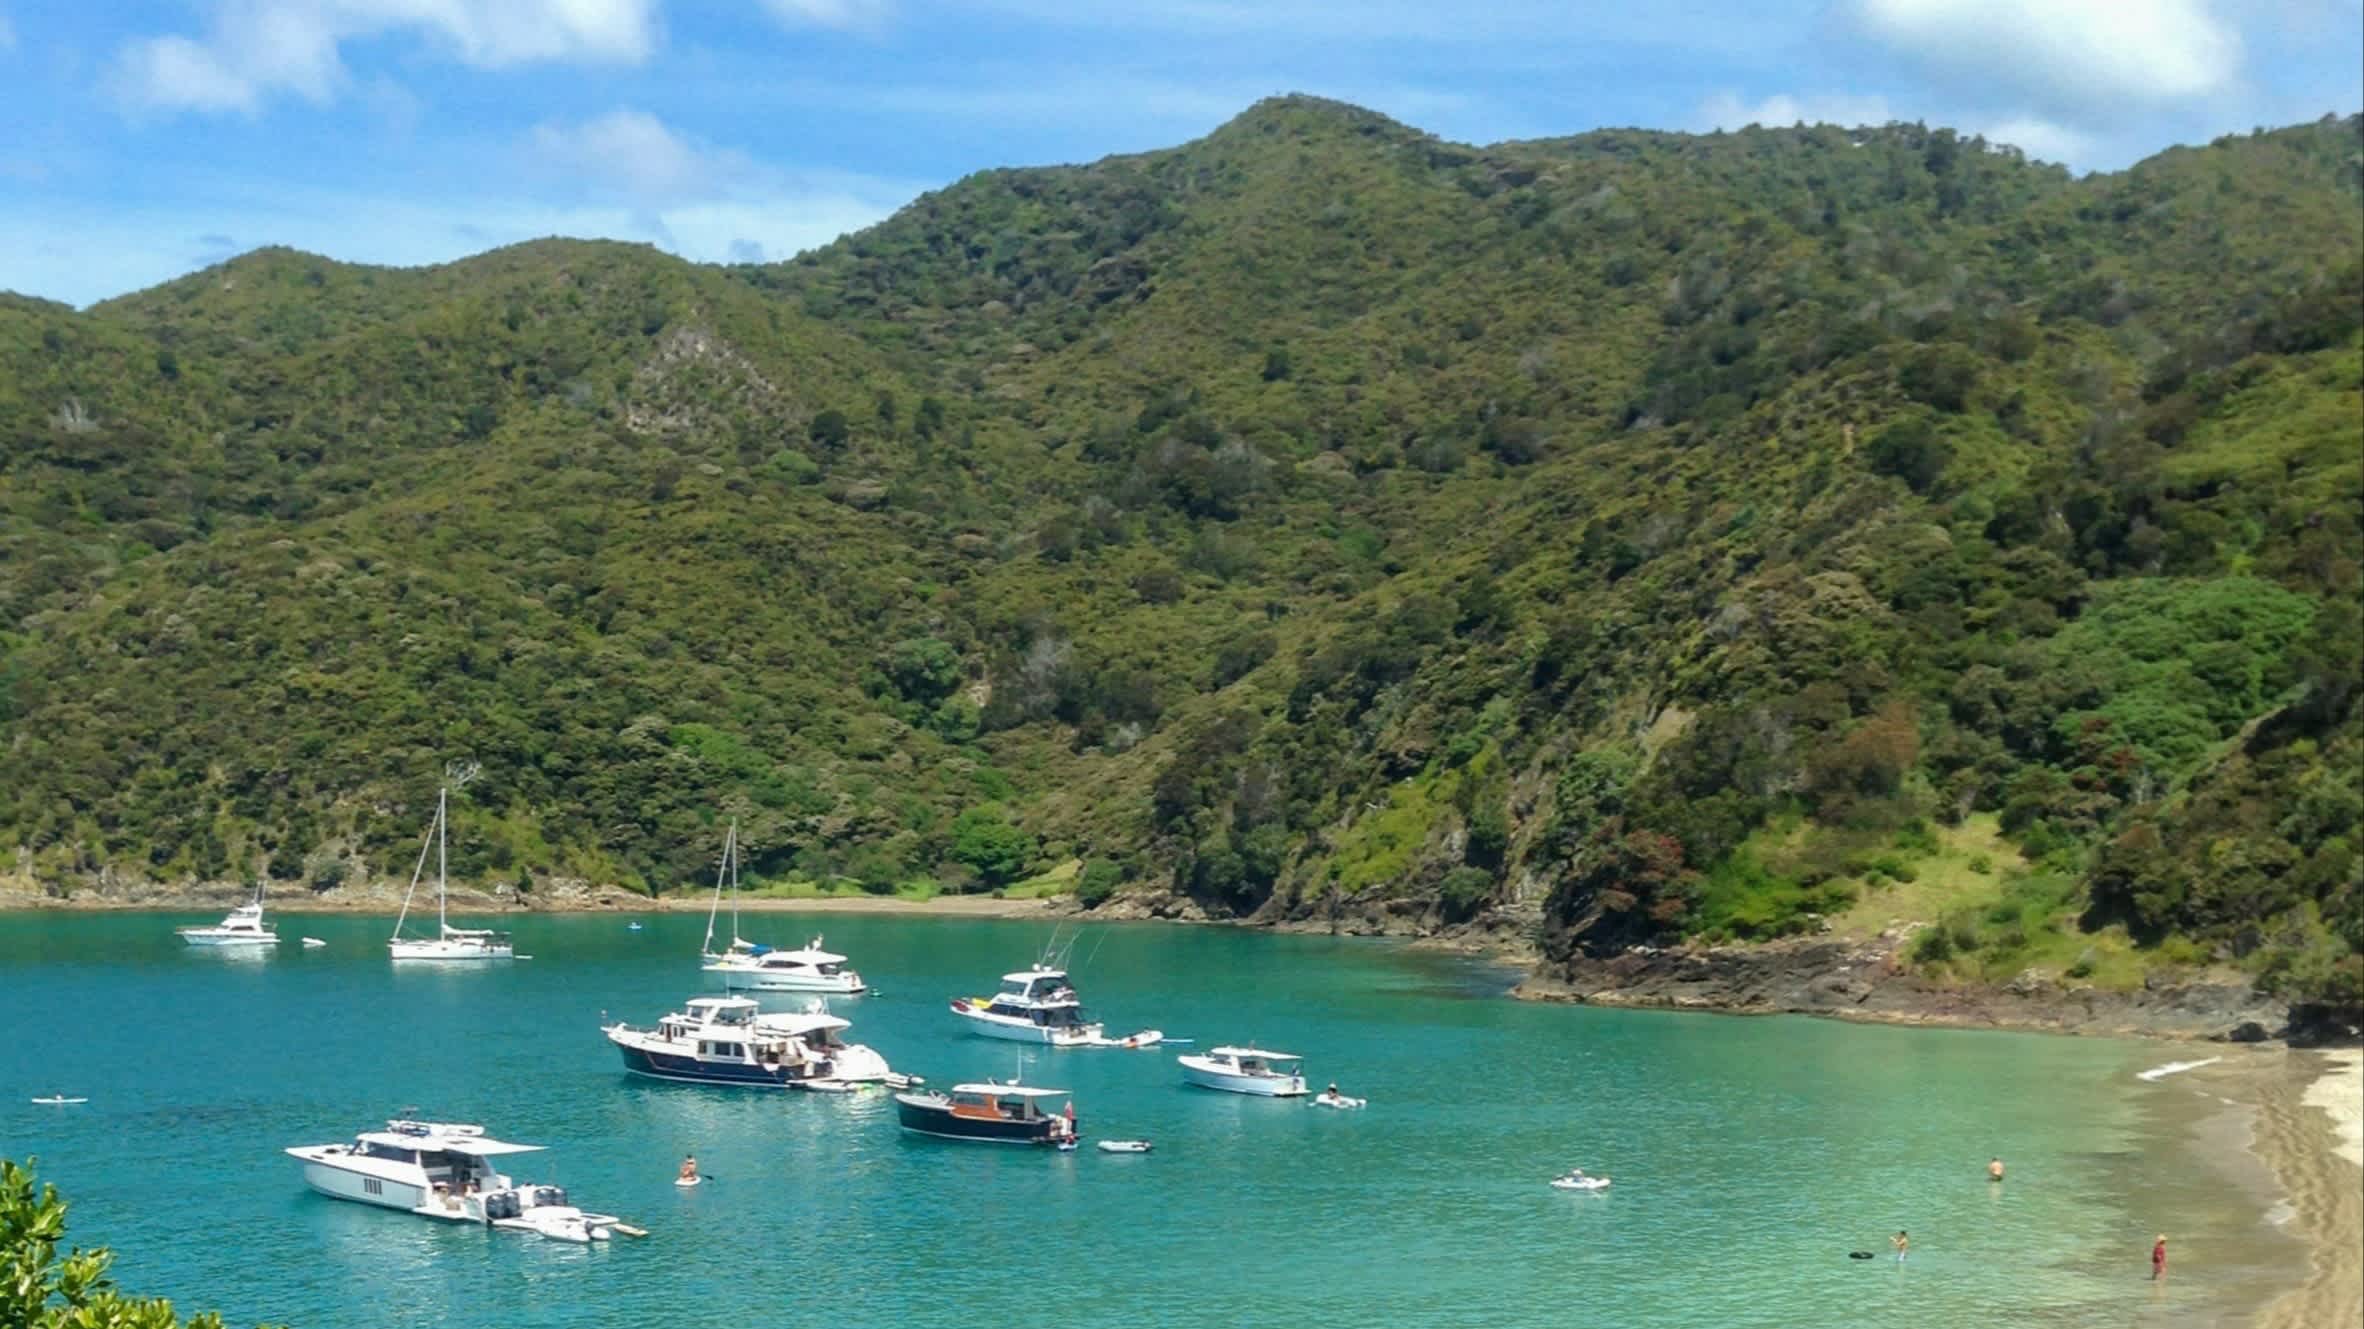 Bateaux dans la baie d'Oke, Bay of Islands, Nouvelle-Zélande

